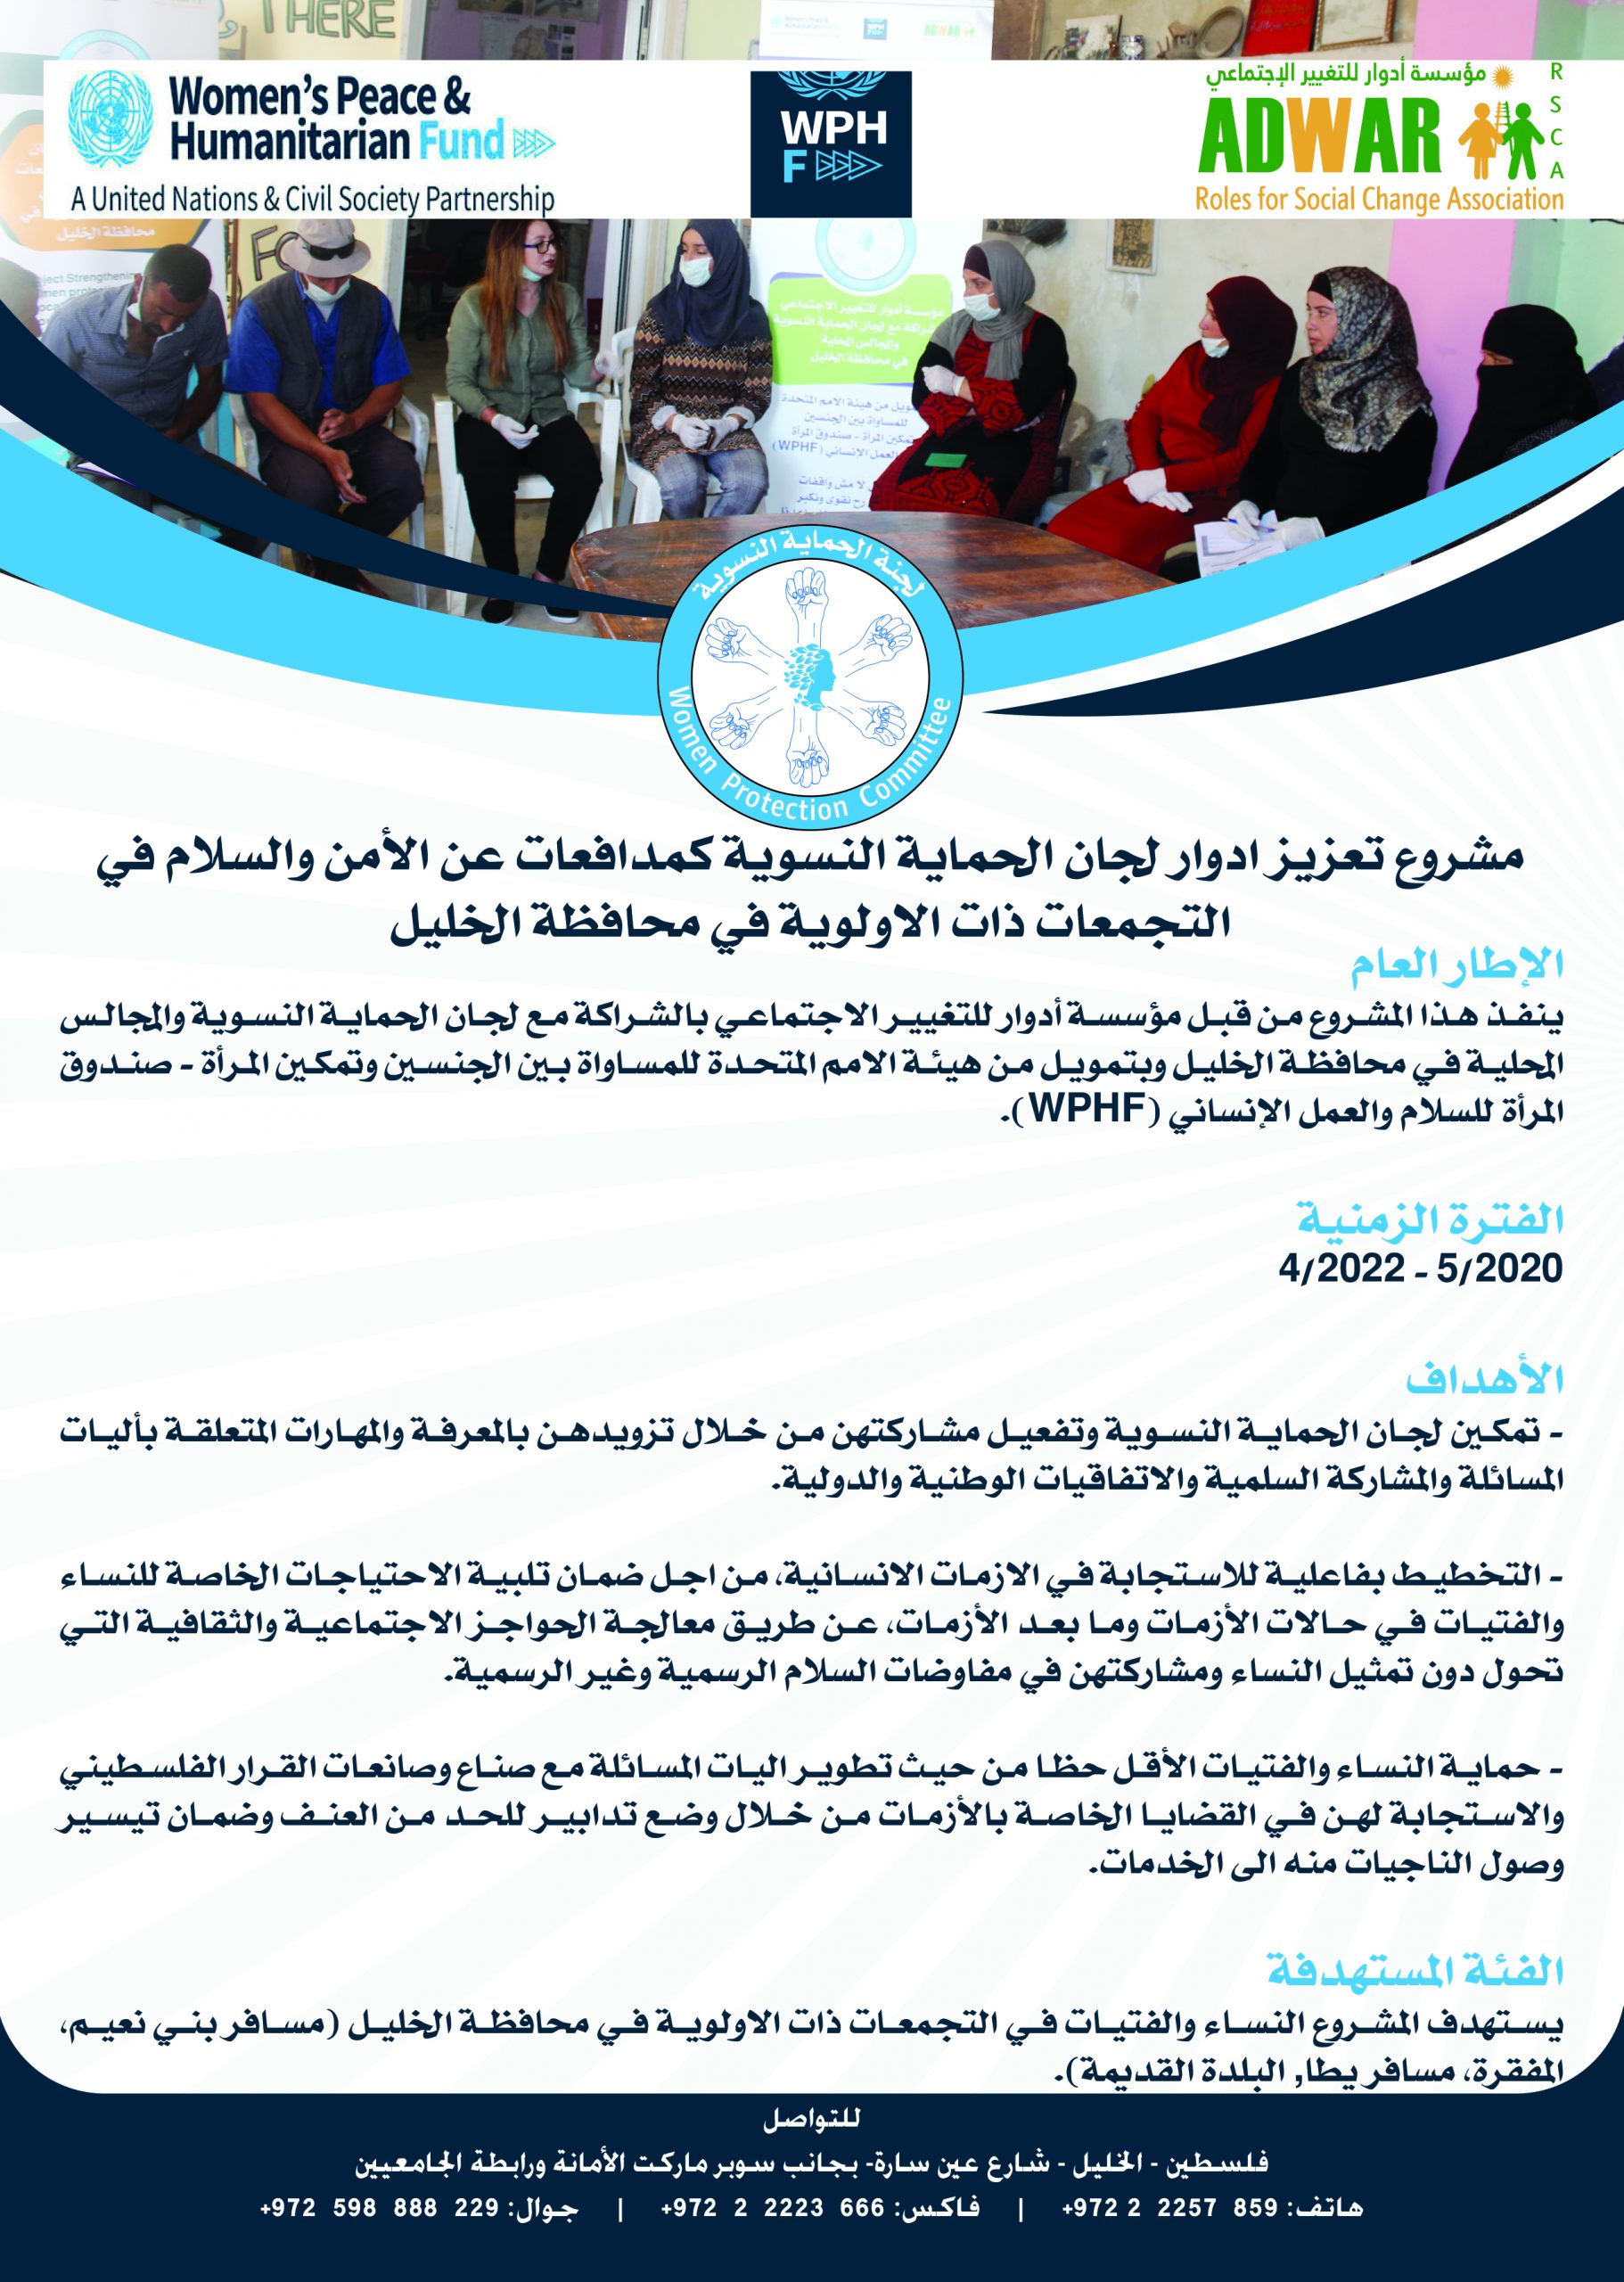  مشروع تعزيز أدوار لجان الحماية النسويه كمدافعات عن الأمن والسلام في التجمعات ذات الولوية في محافظة الخليل